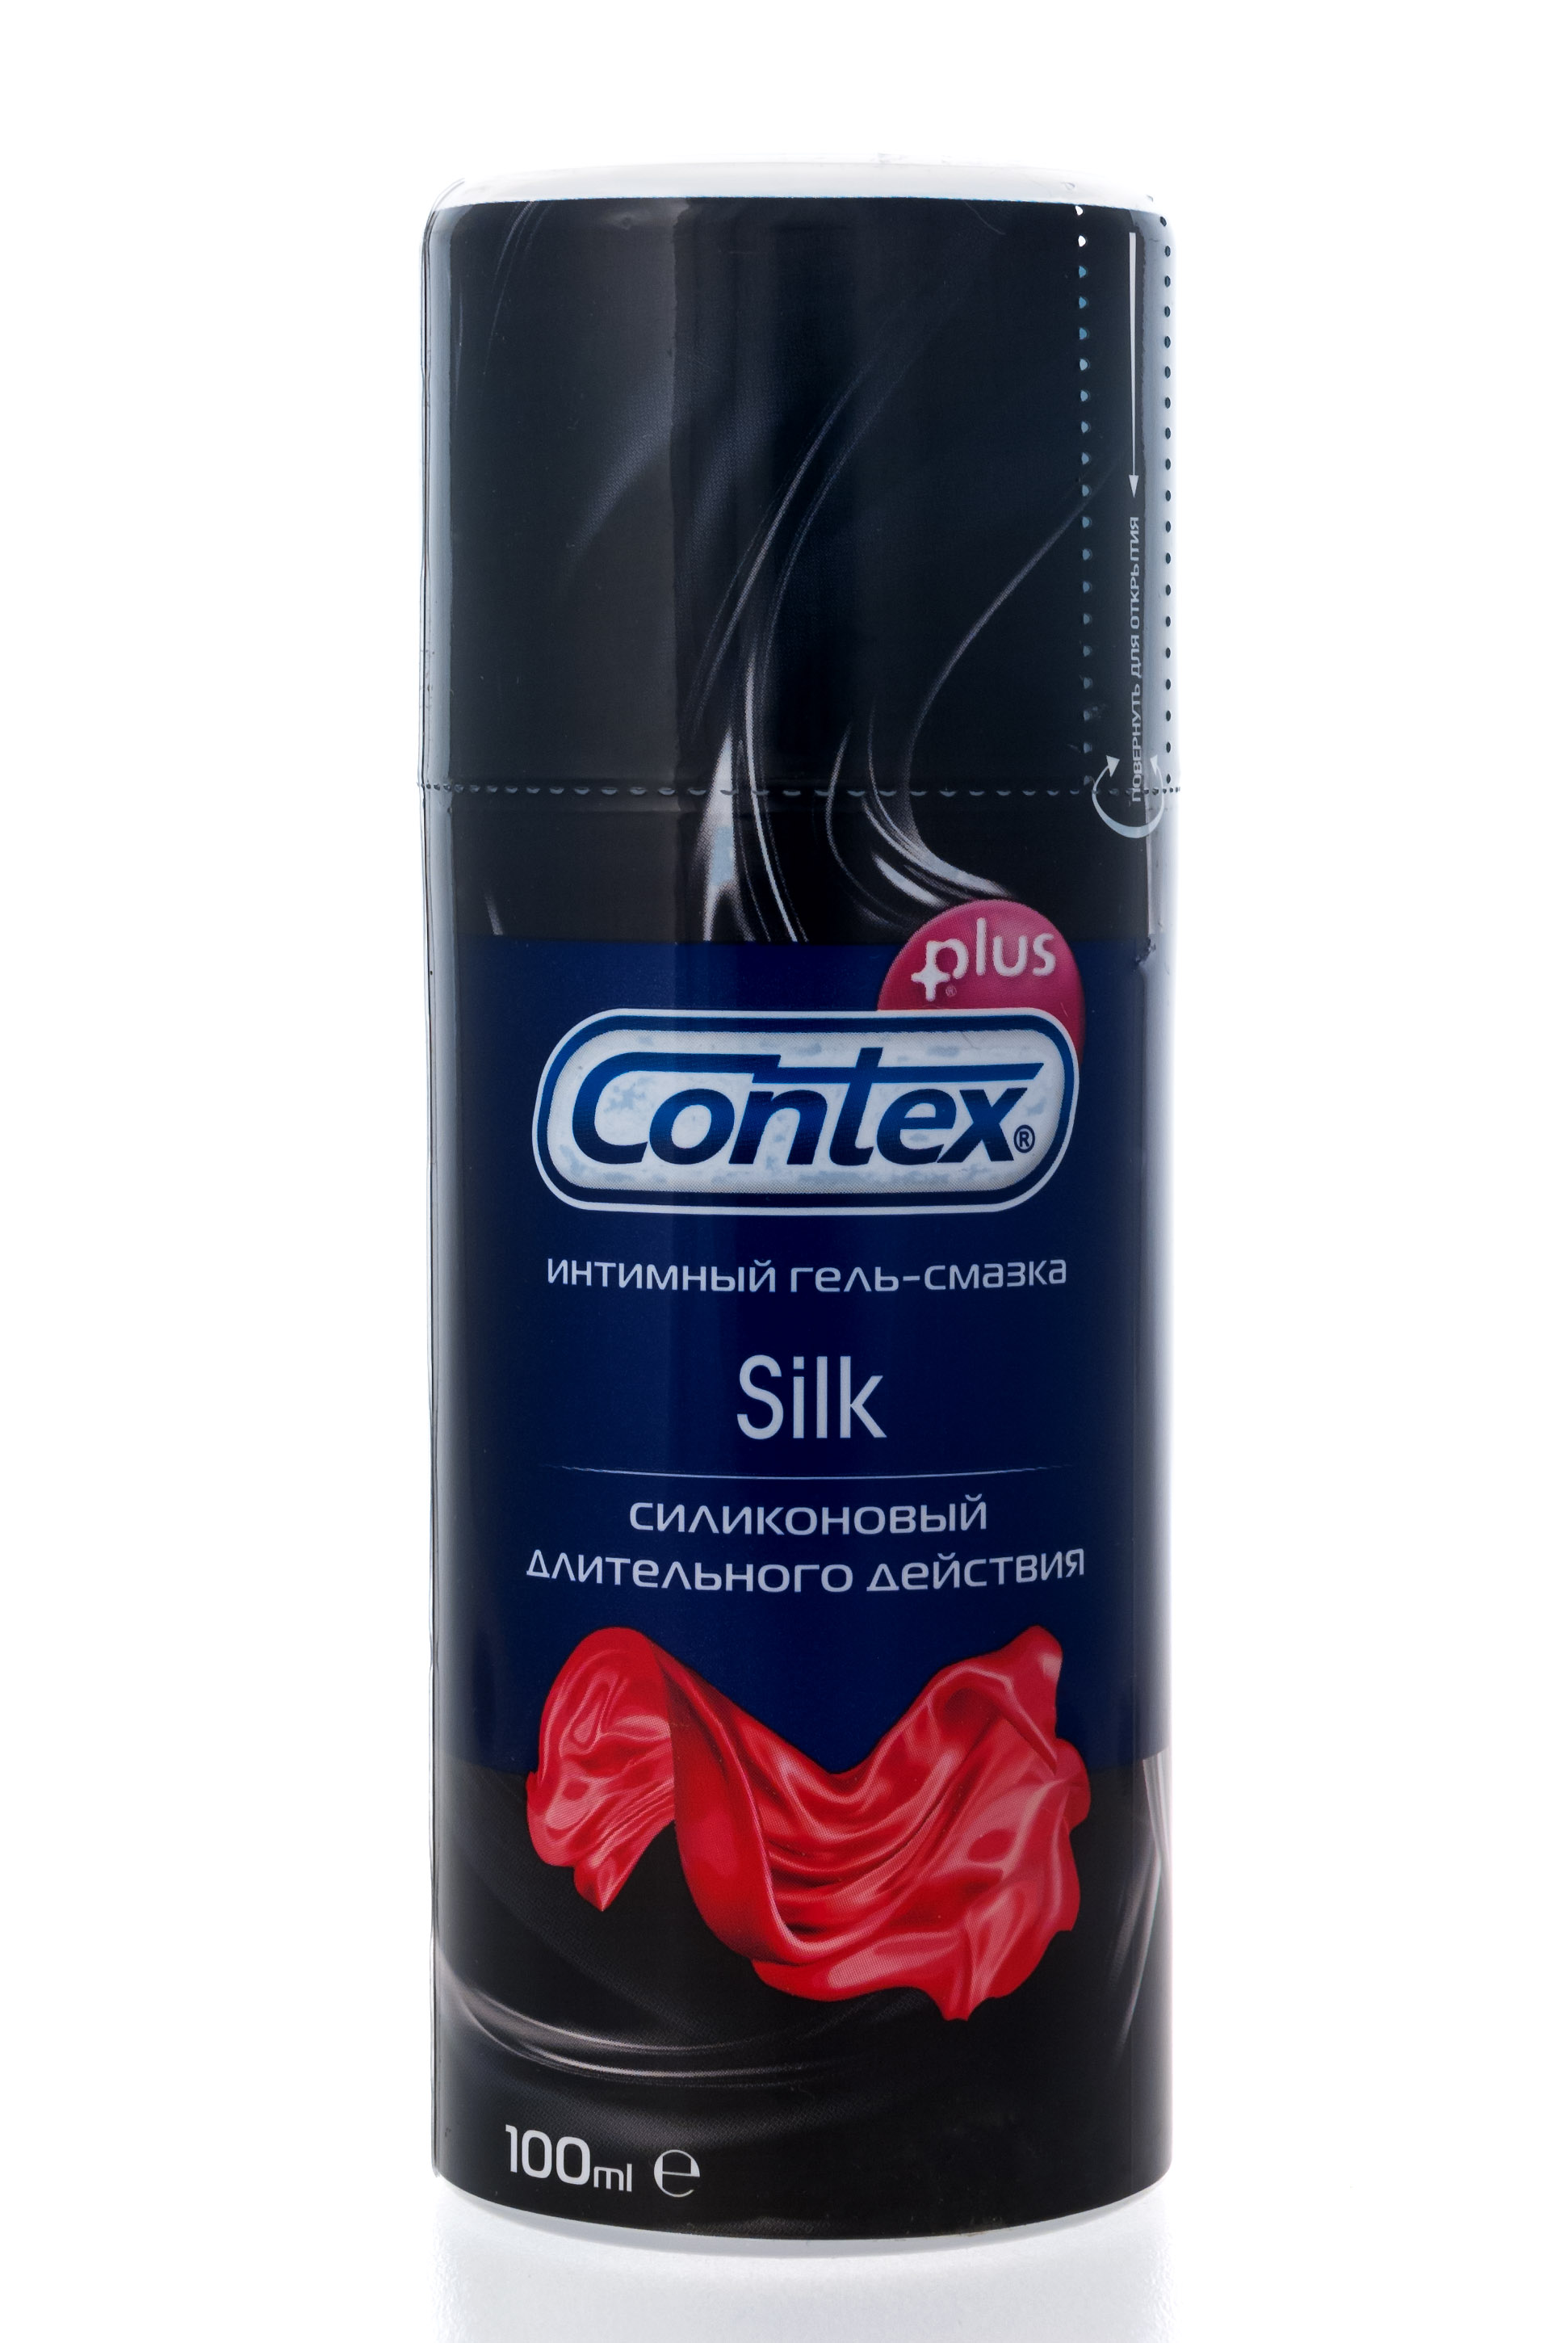 Contex Интимный гель-смазка Silk, 100мл (Contex, Гель-смазка)